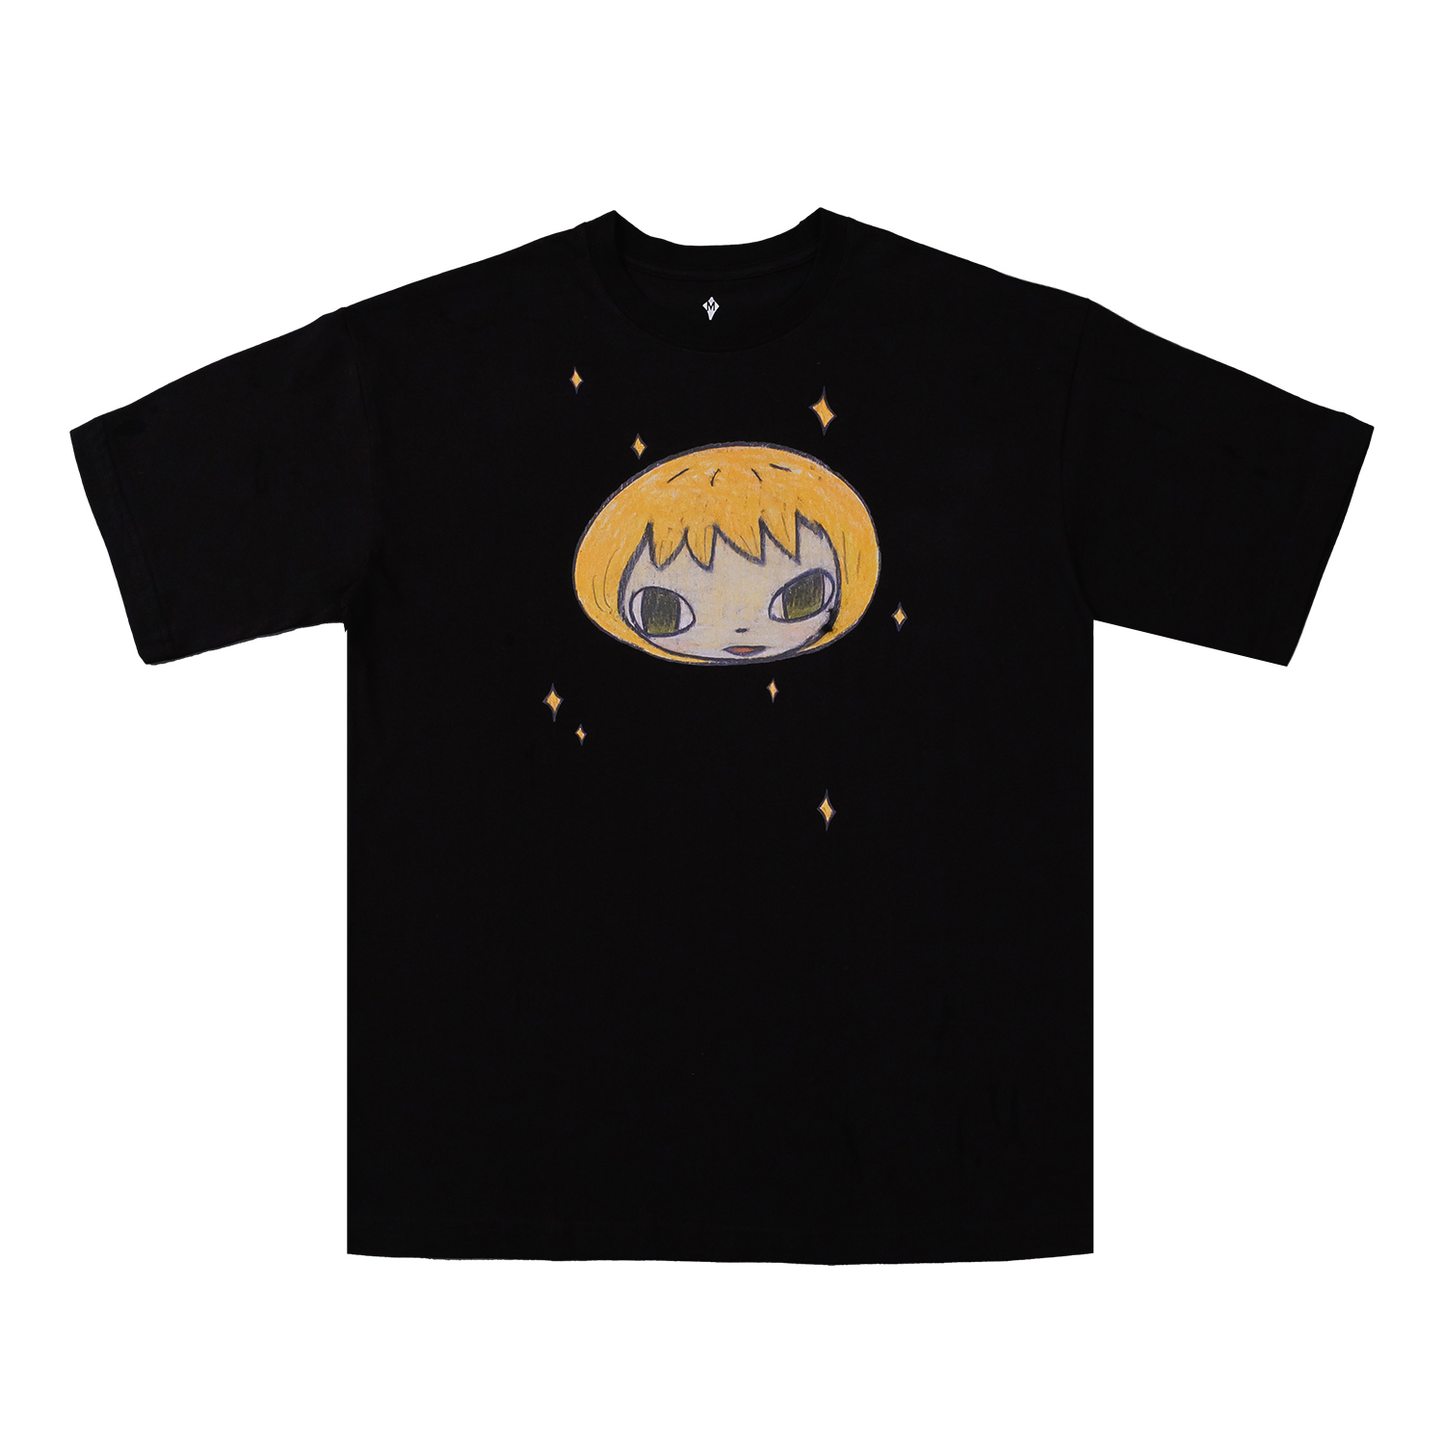 T-shirt - Glitter Star / Yuz Black